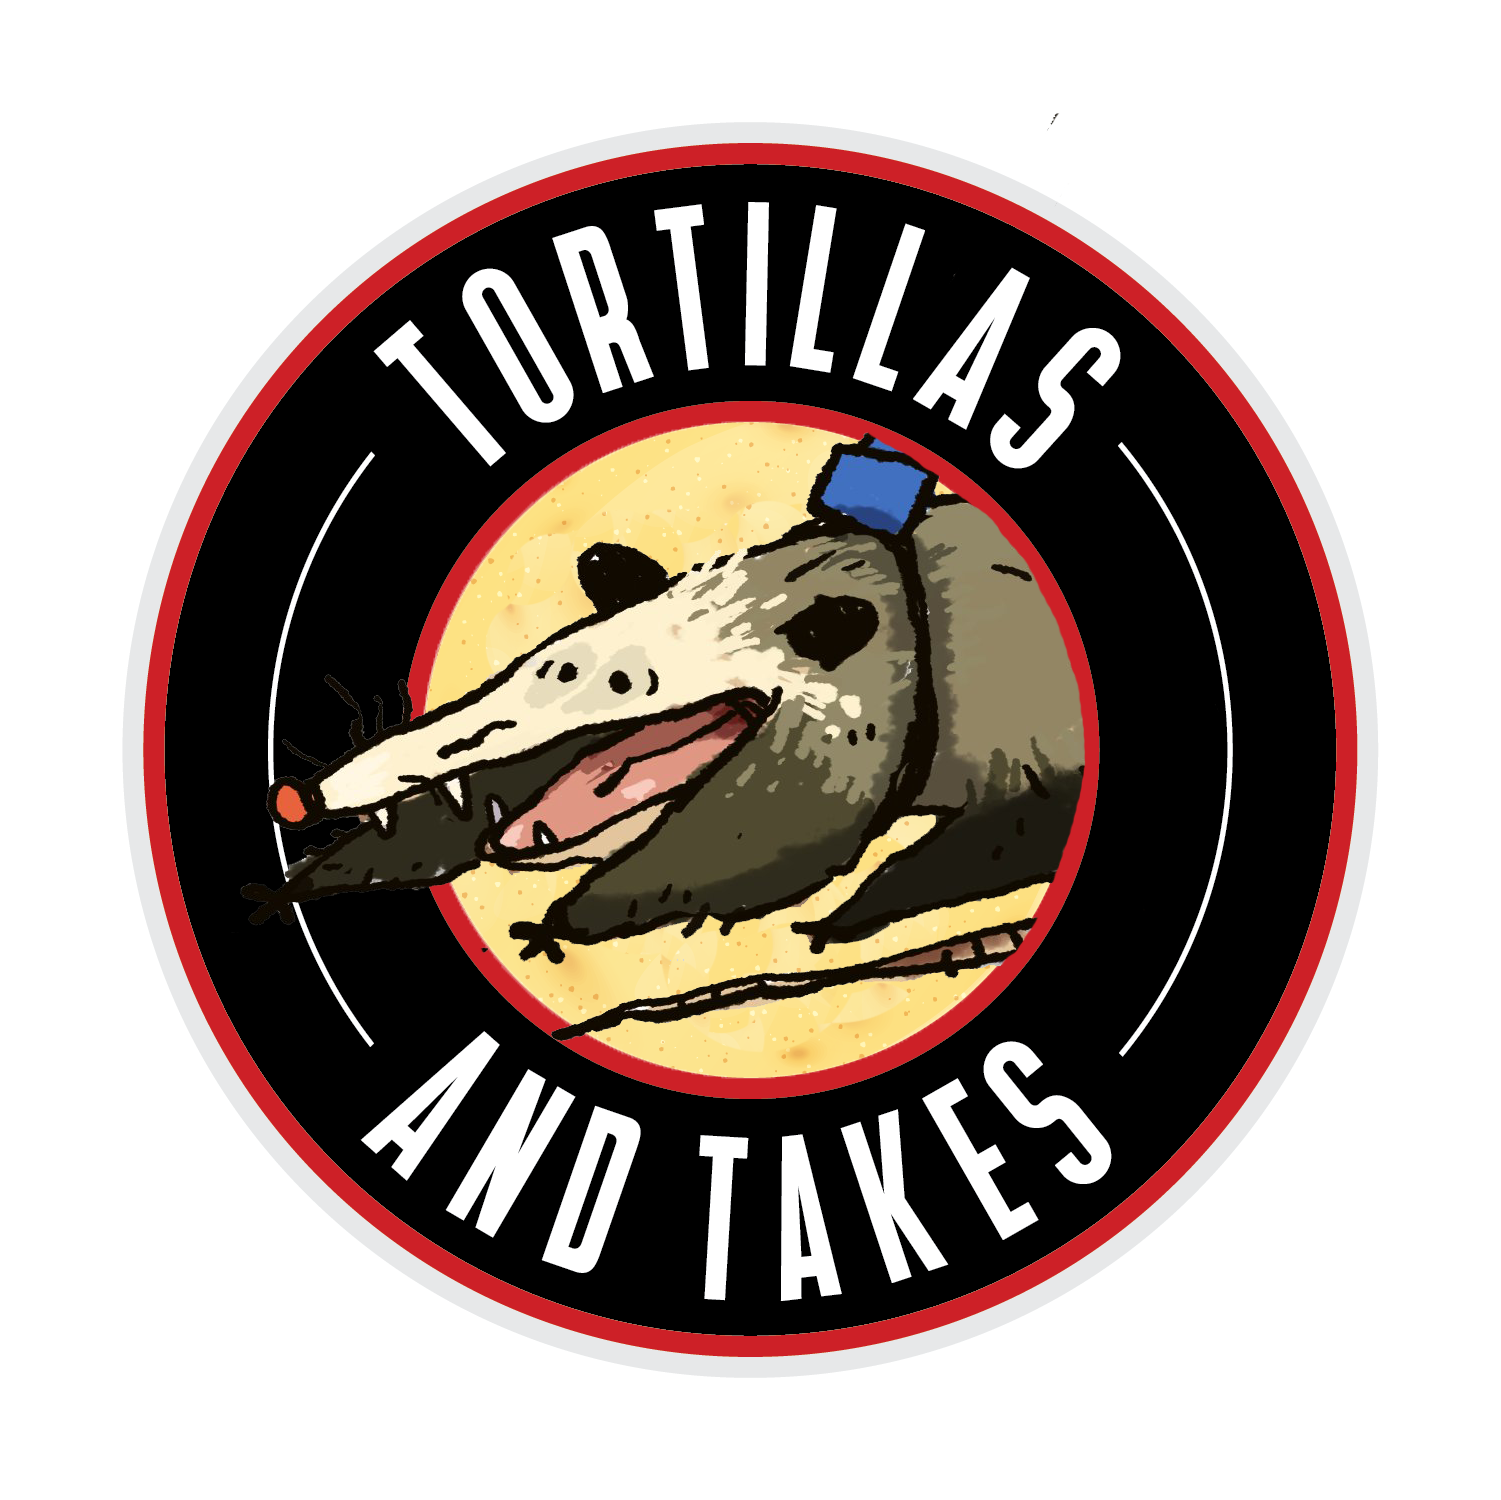 Tortillas & Takes